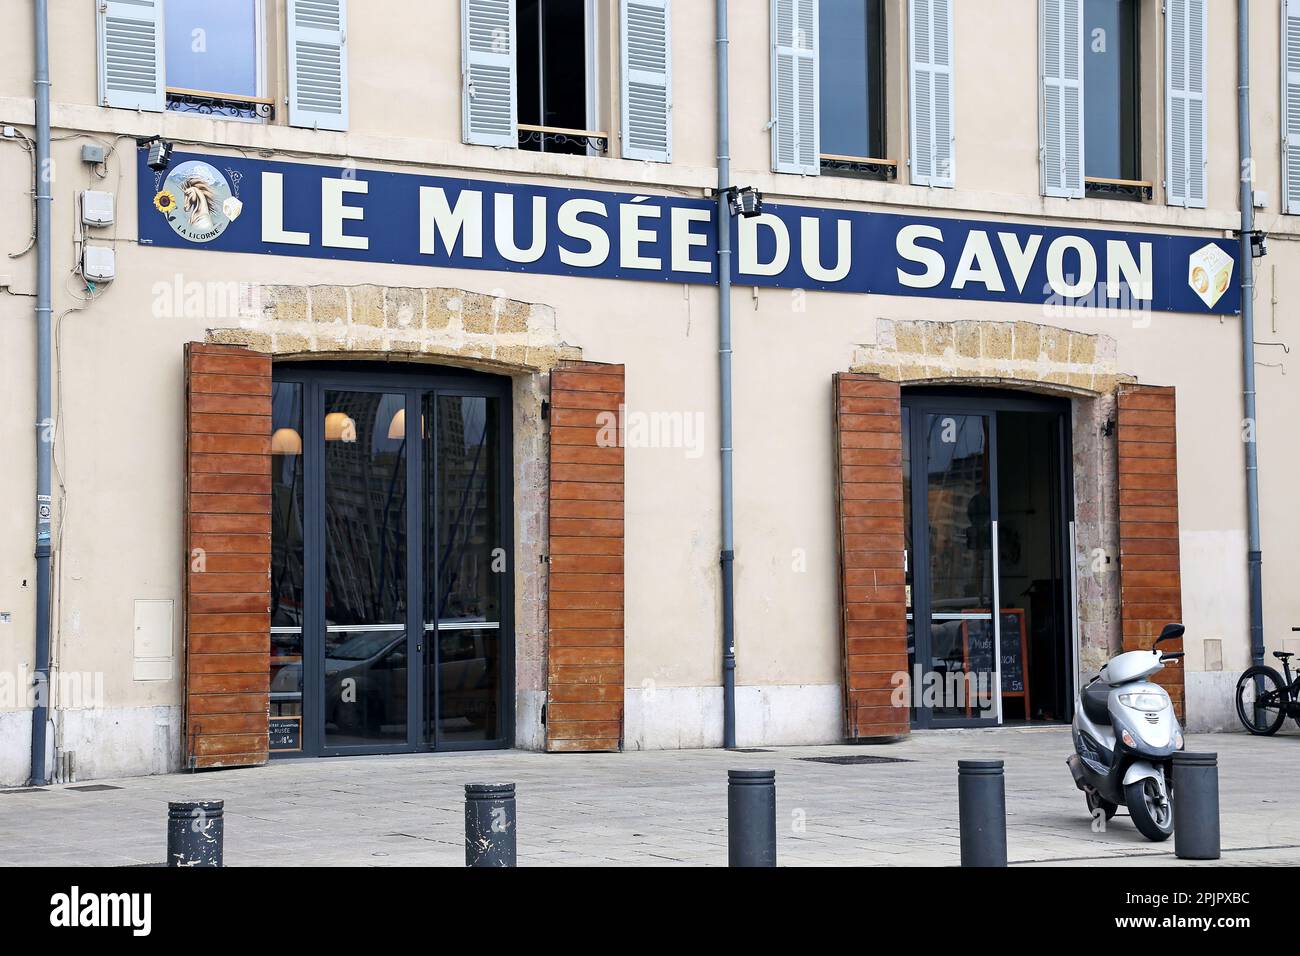 Le Musee du Savon La Licorne, Quai de Rive Neuve, Vieux Port (Old Port),  Marseille, Bouches-du-Rhone, Provence, France, Mediterranean Sea, Europe  Stock Photo - Alamy